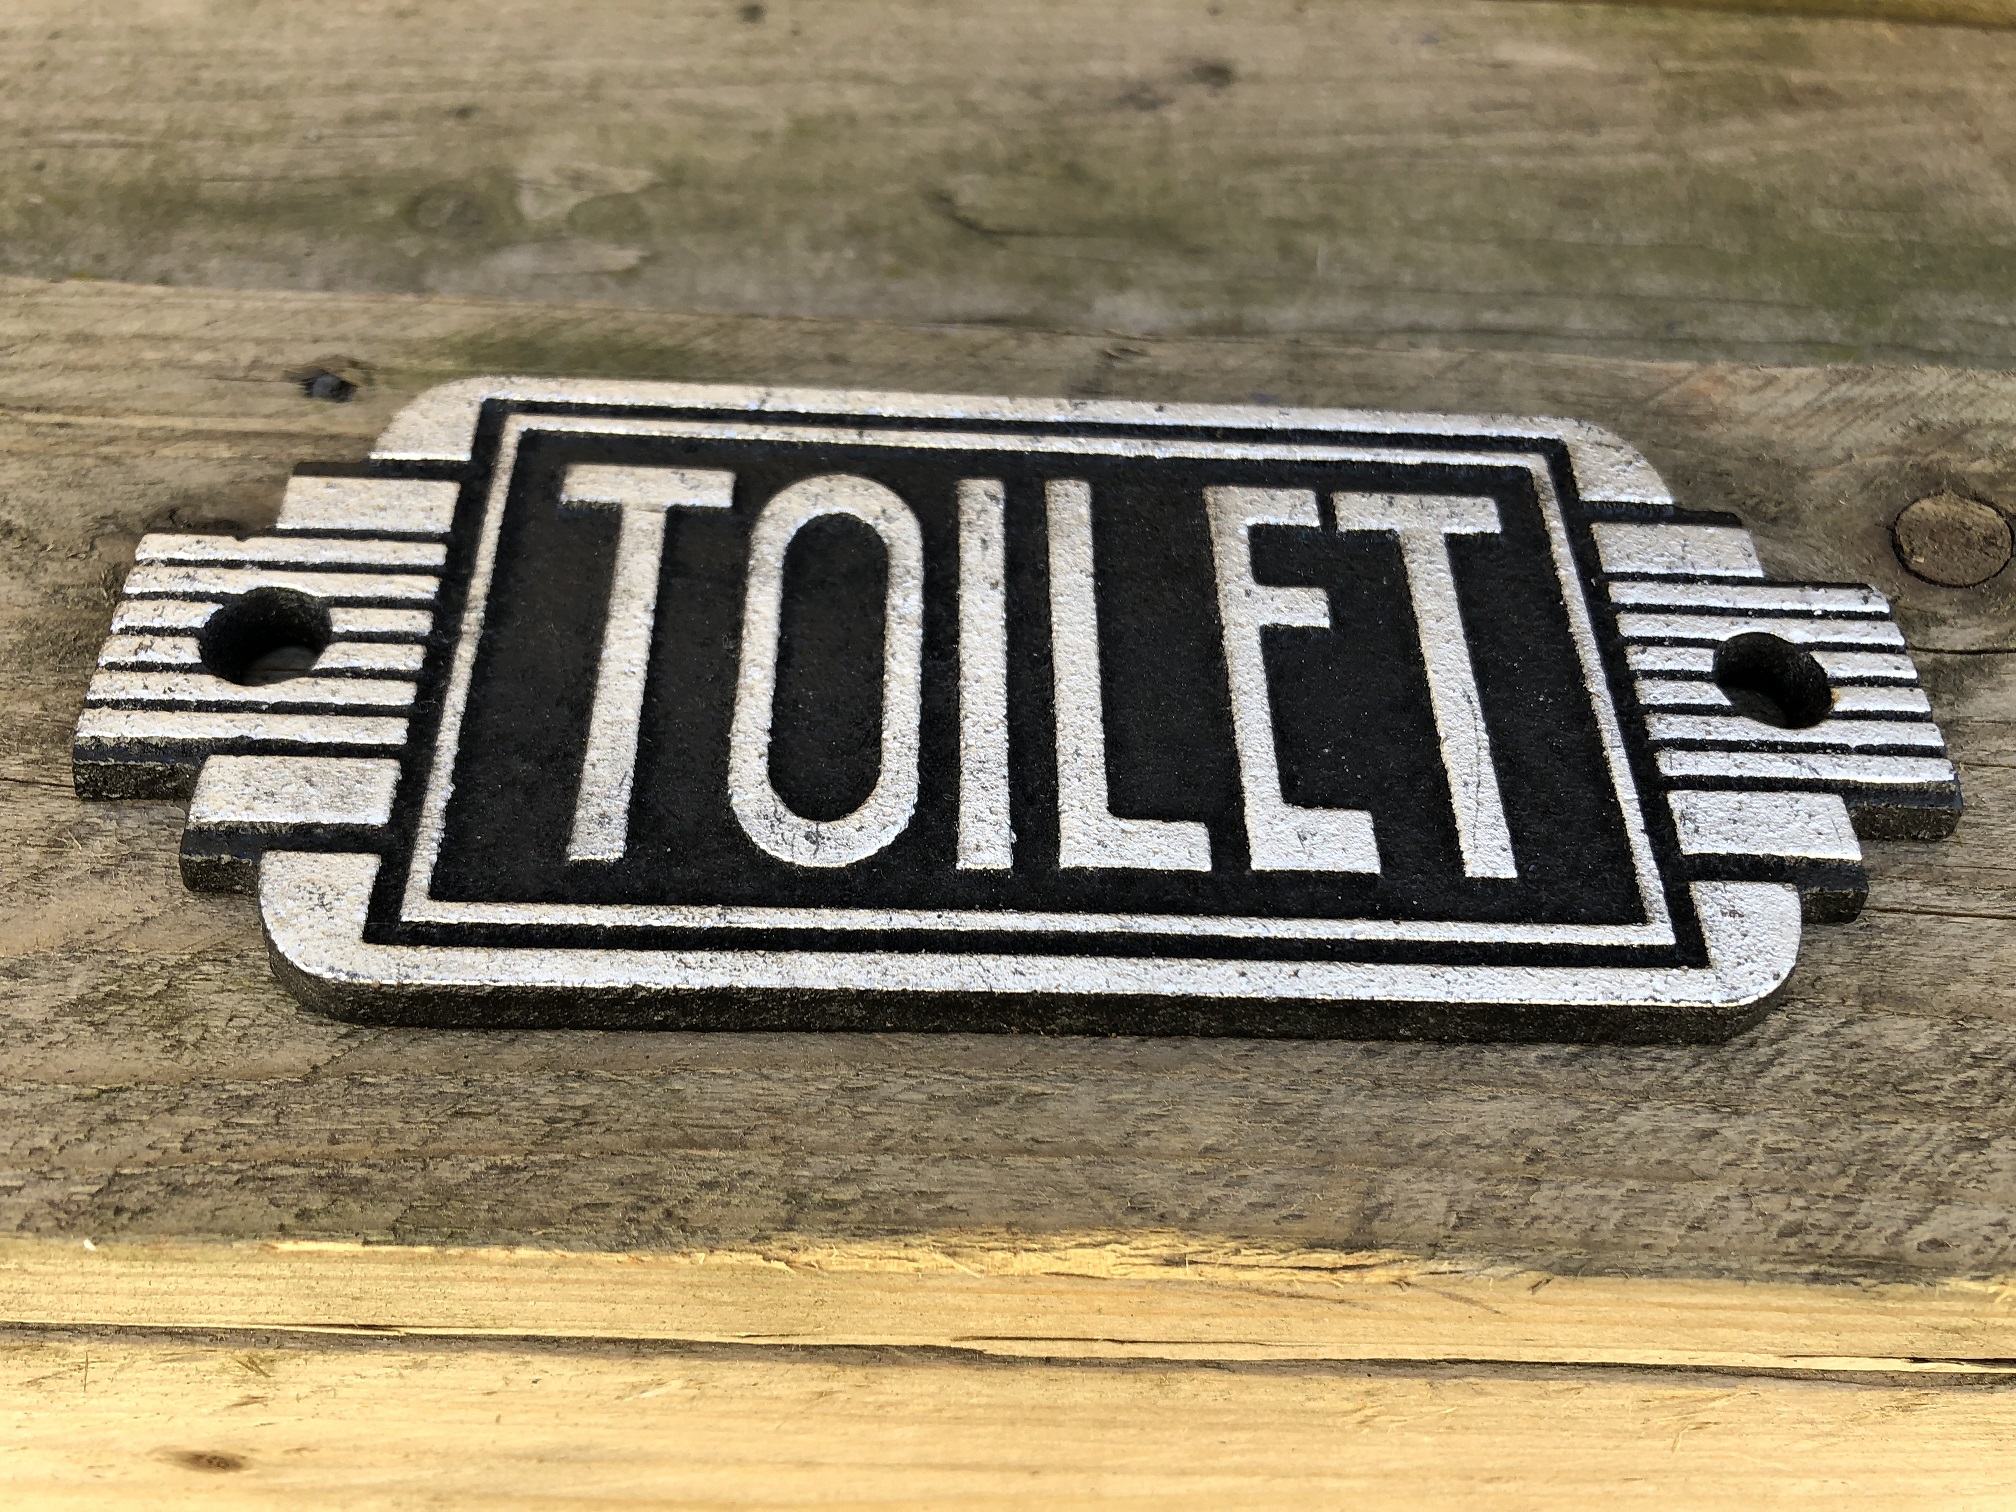 Bordje cast iron  sign 'Toilet' voor de deur